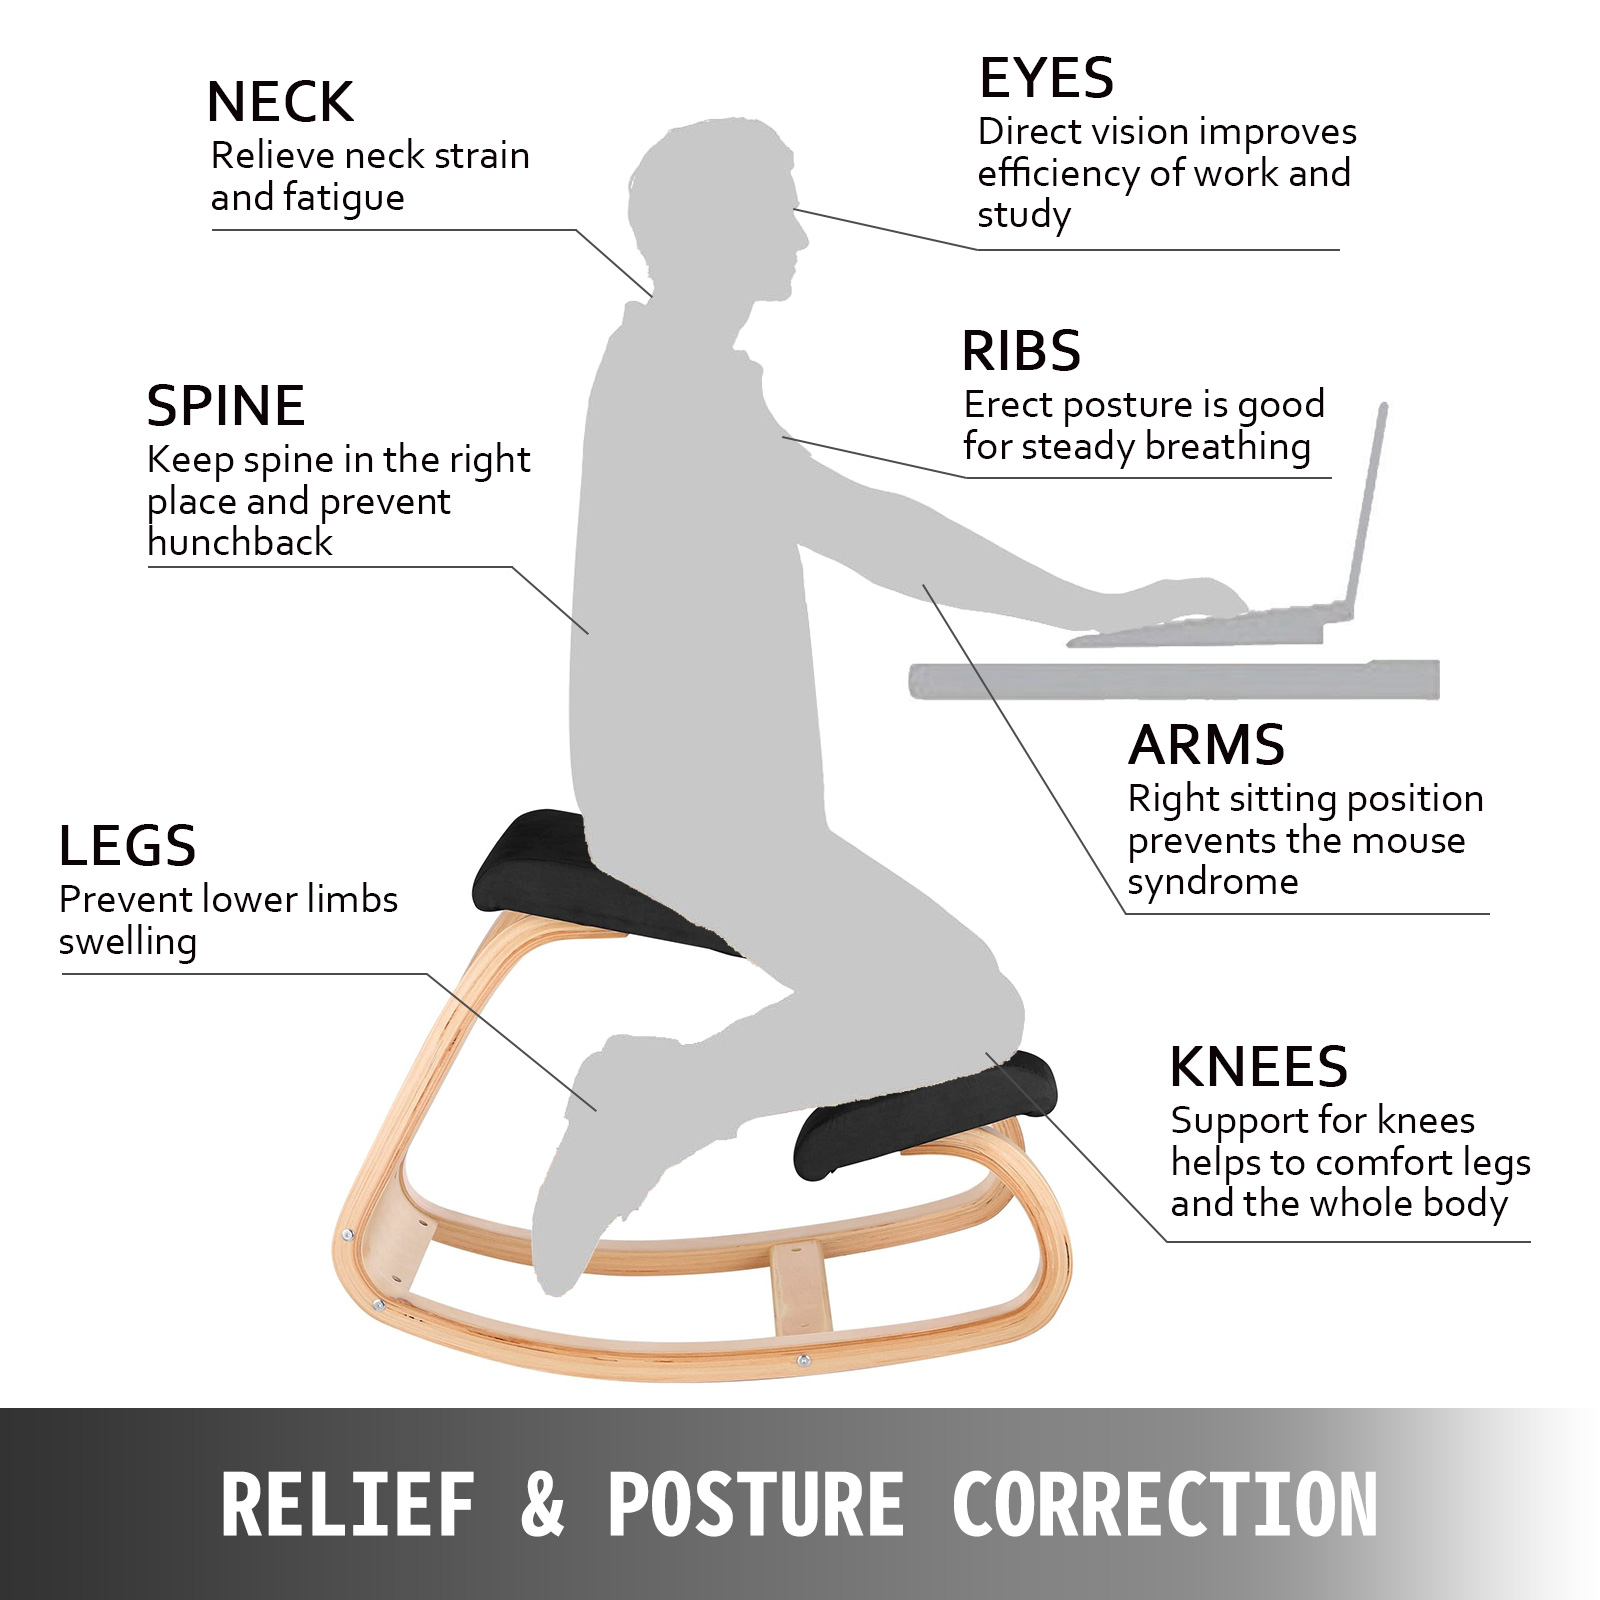 Silla ergonómica para arrodillarse, silla ergonómica de rodillas ajustable  en altura y ángulo, silla de rodilla, cojines de espuma gruesa y ruedas